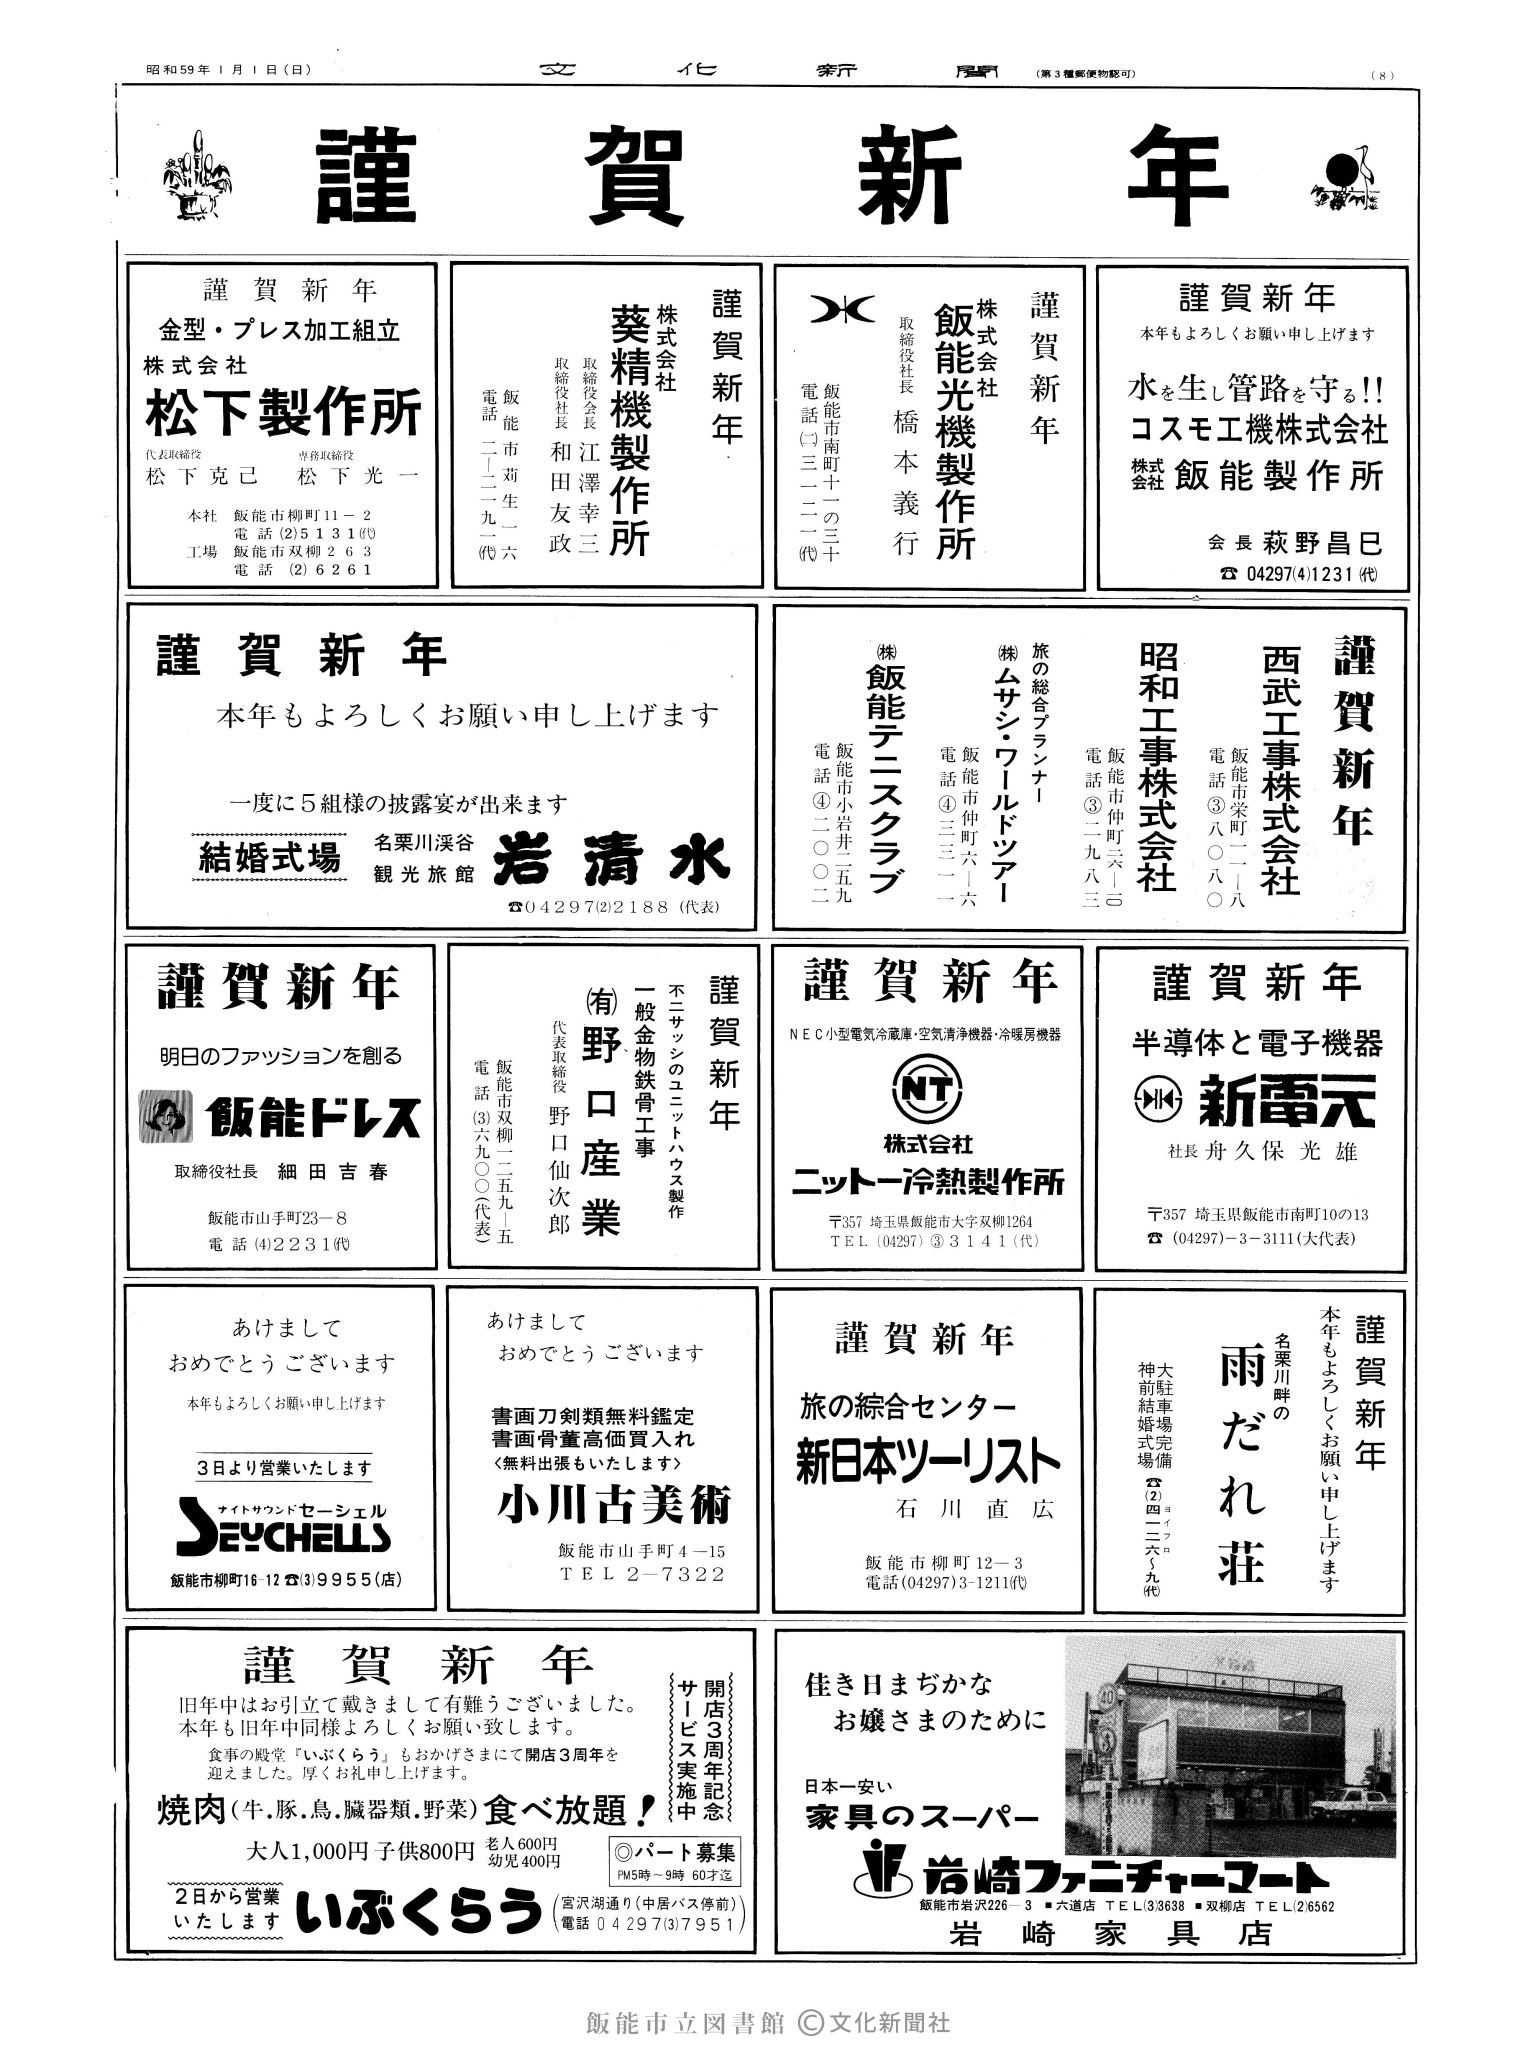 昭和59年1月1日8面 (第10601号) 広告ページ